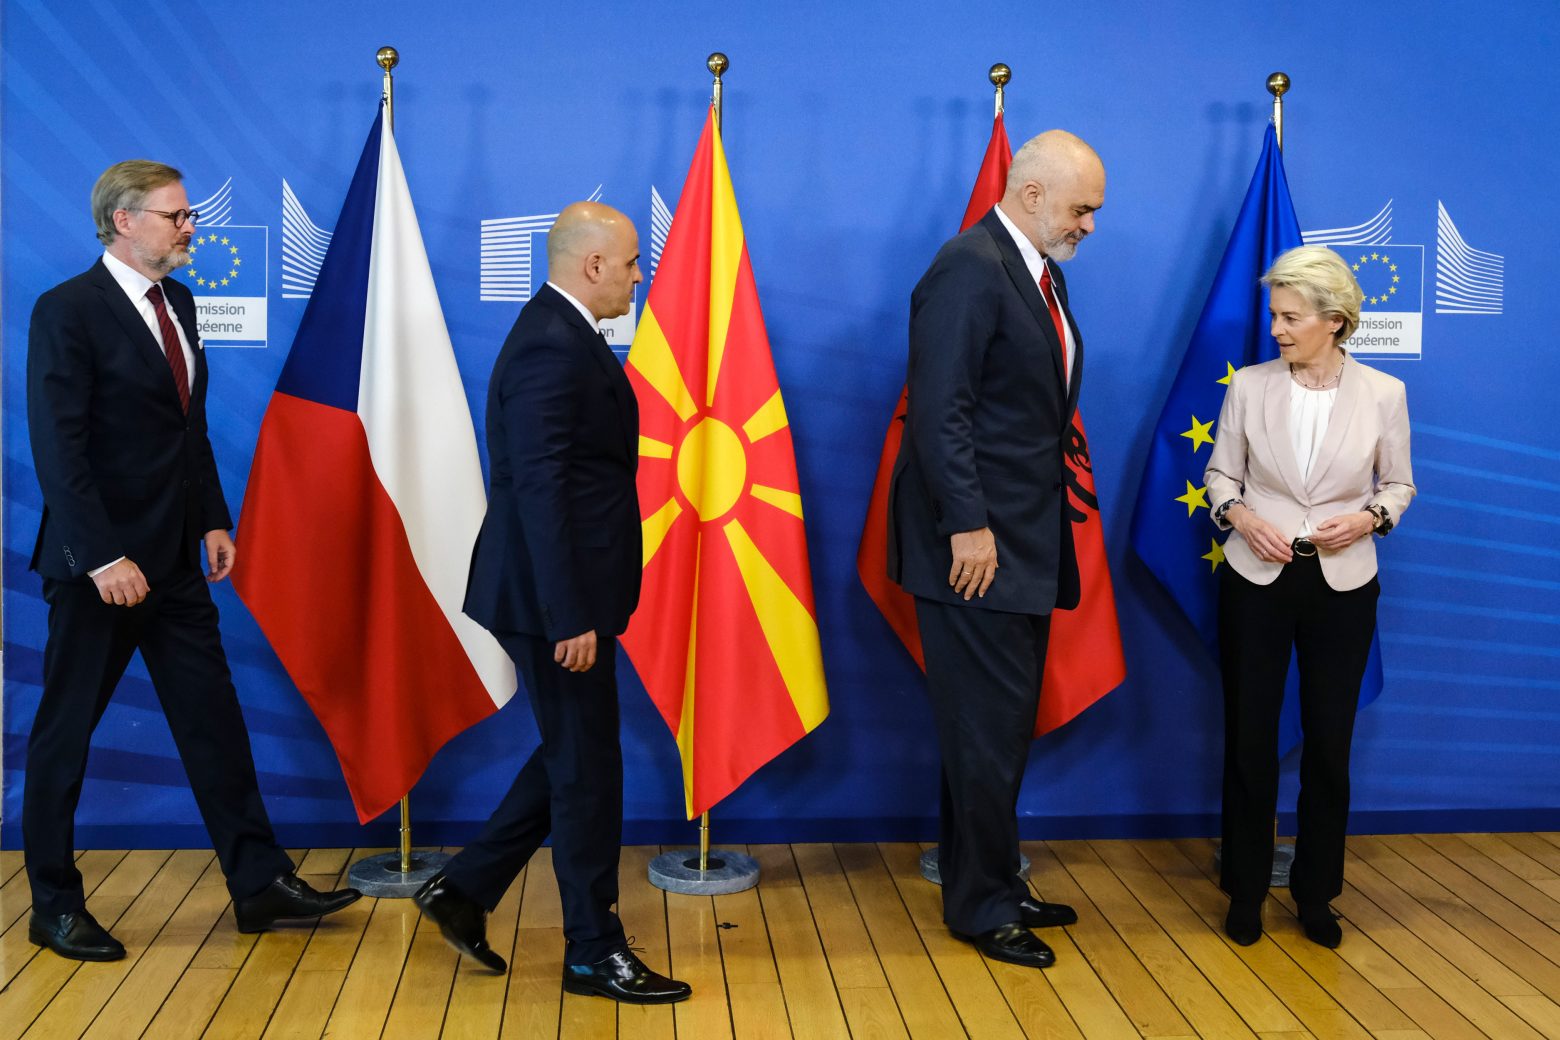 Βόρεια Μακεδονία: Οι απαιτήσεις της Βουλγαρίας για αλλαγές στο σύνταγμα απειλούν το μέλλον της ΕΕ